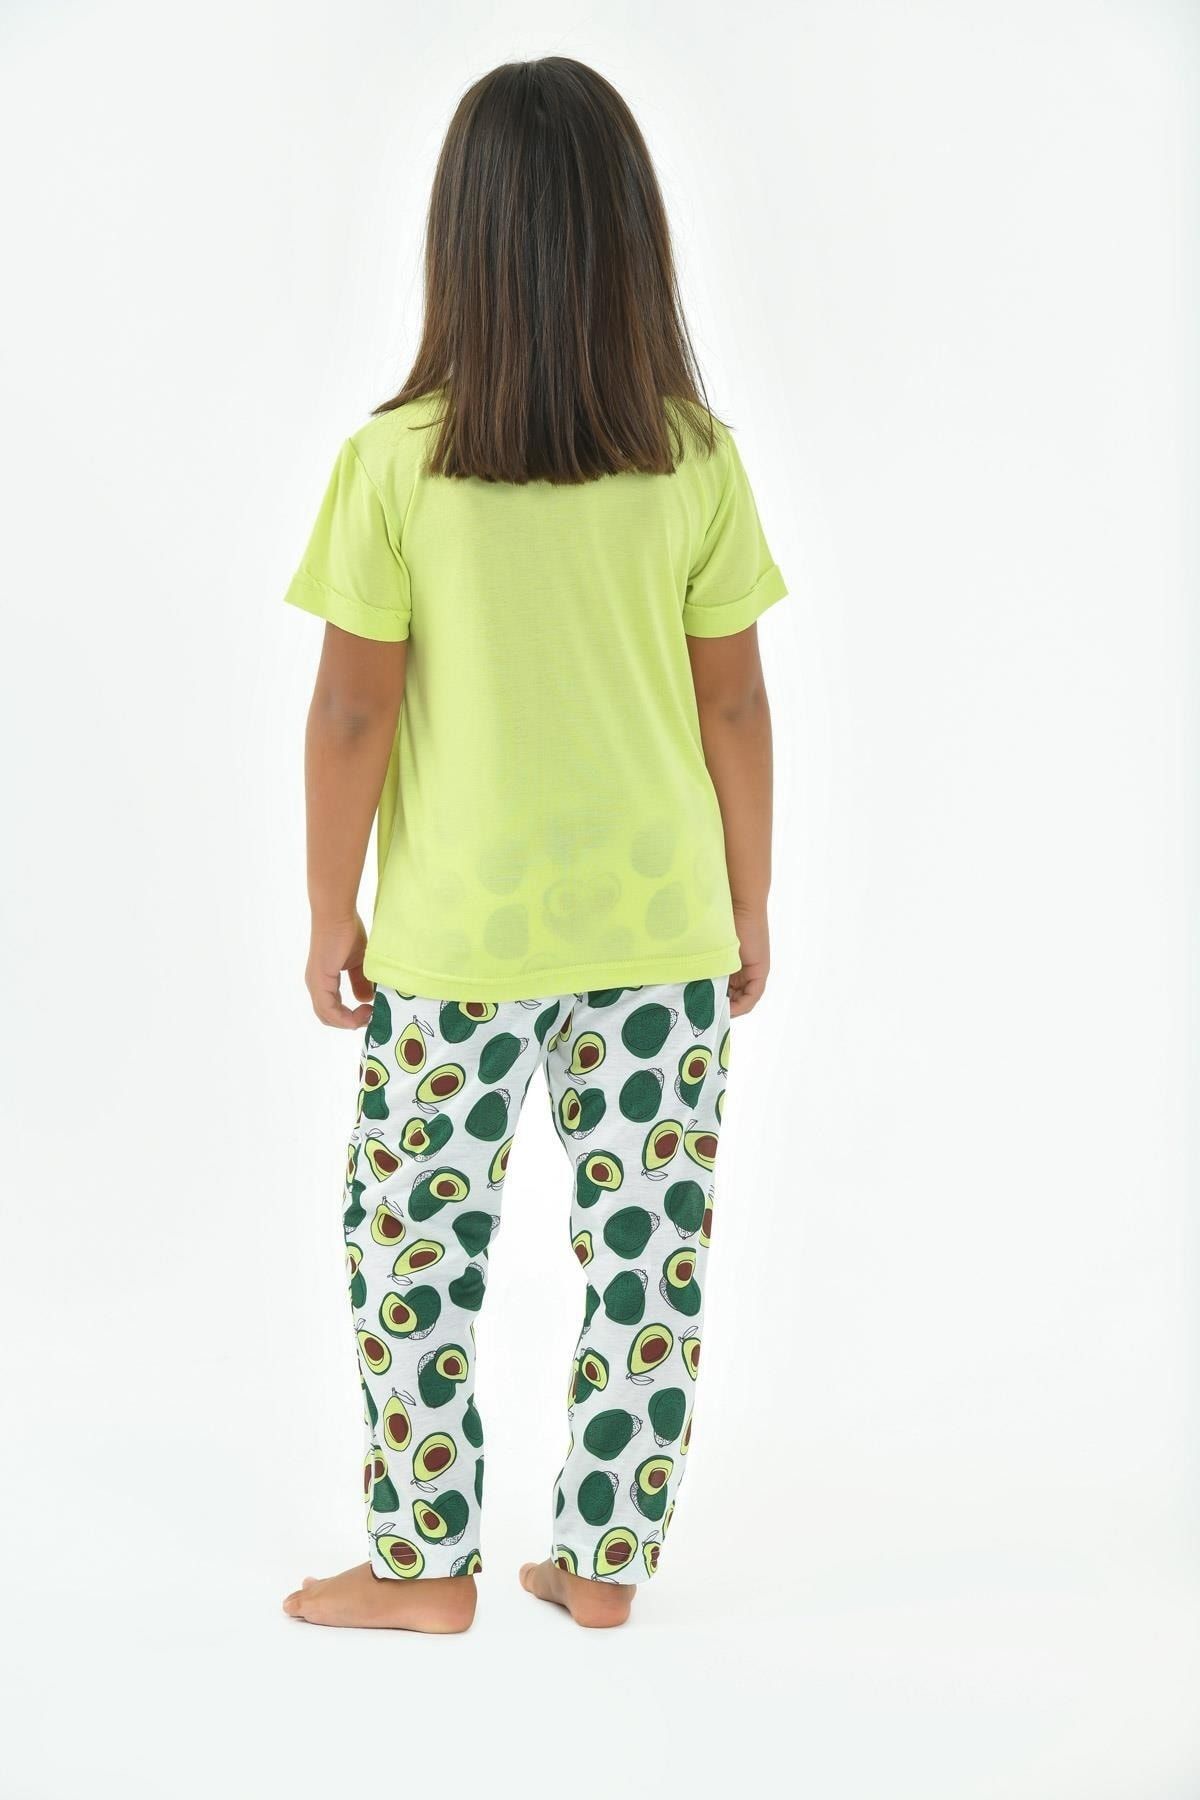 Yeni İnci Ckp357 Kız Çocuk Kısa Kollu Pijama Takımı Yeşil